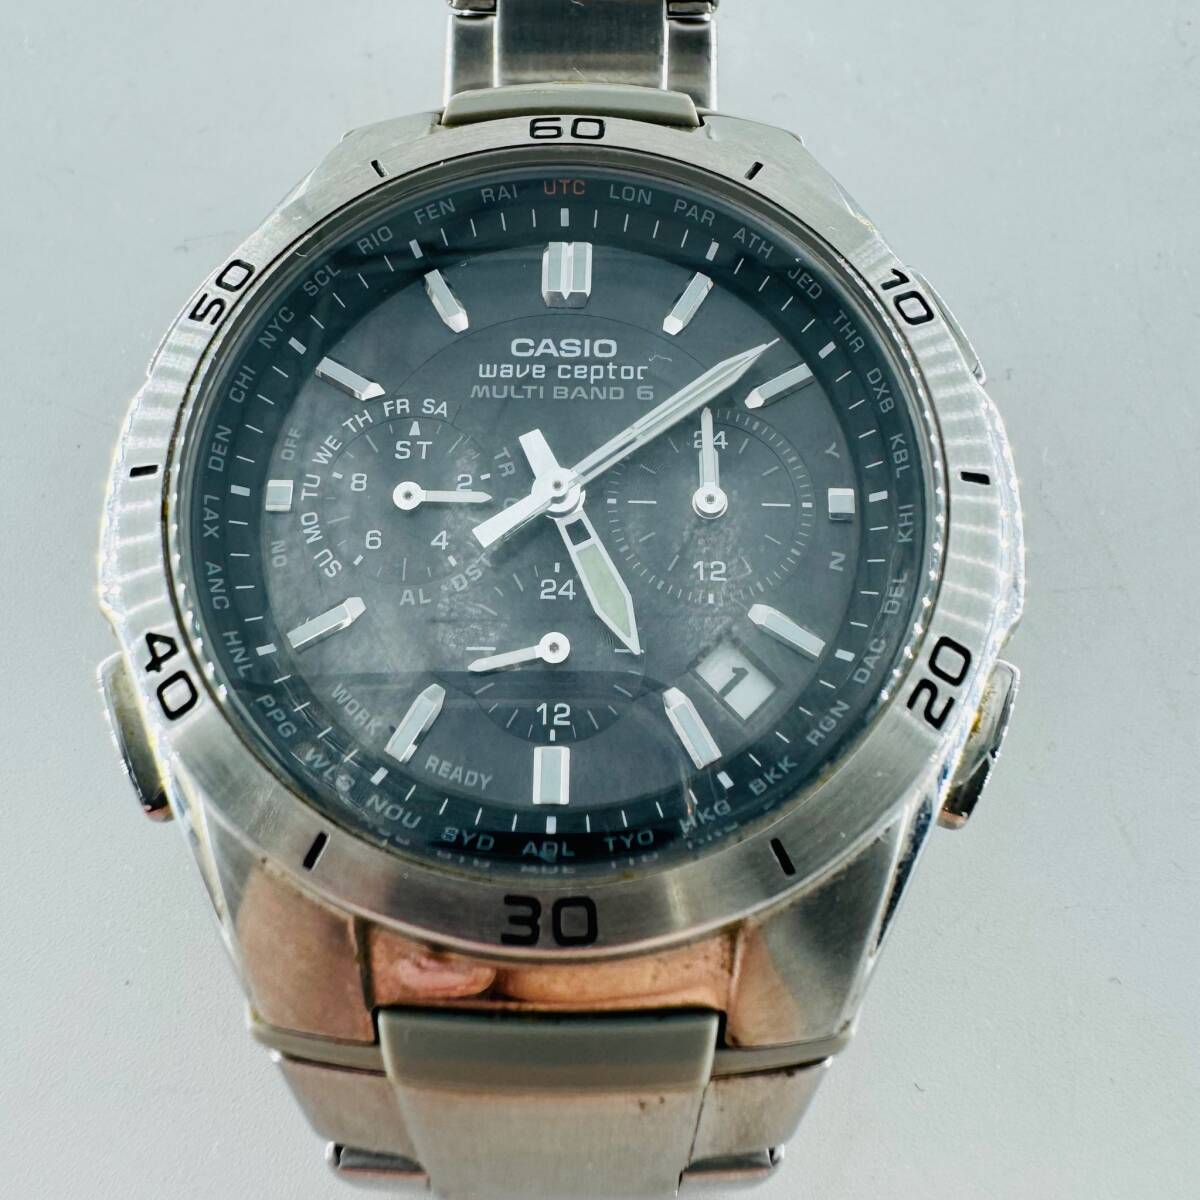 CACIO カシオ MVQ-M410 Wave Ceptor ウェーブセプター タフソーラー 稼働 中古品 現状品 腕時計 コレクション 黒文字盤 格安 1円出品 7914